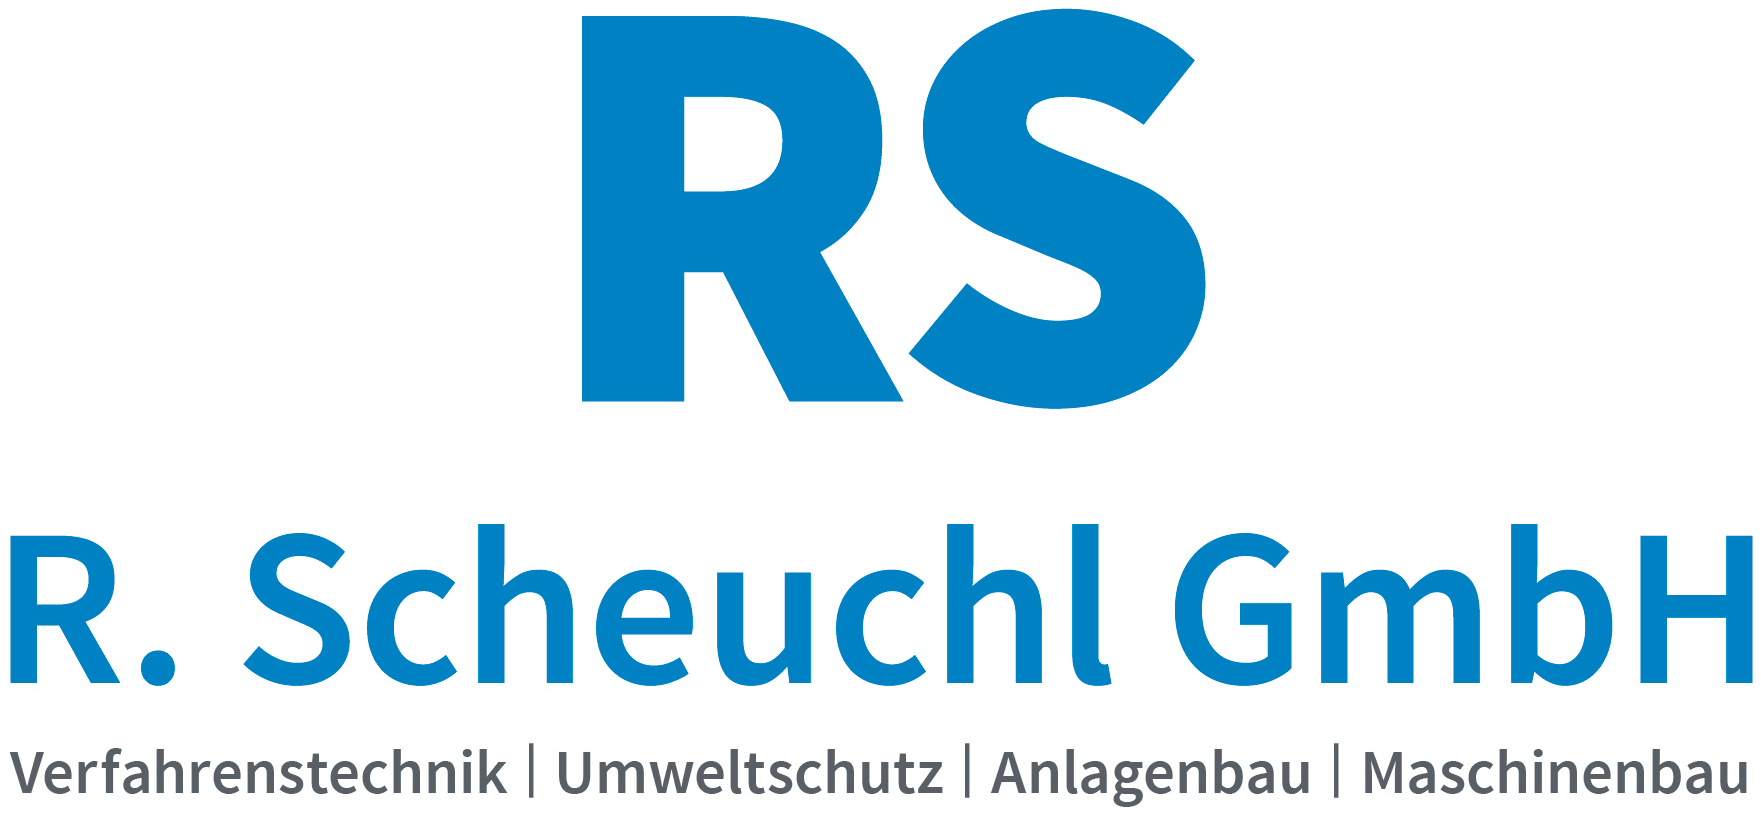 R. Scheuchl GmbH
Verfahrenstechnik | Umweltschutz | Anlagenbau | Maschinenbau